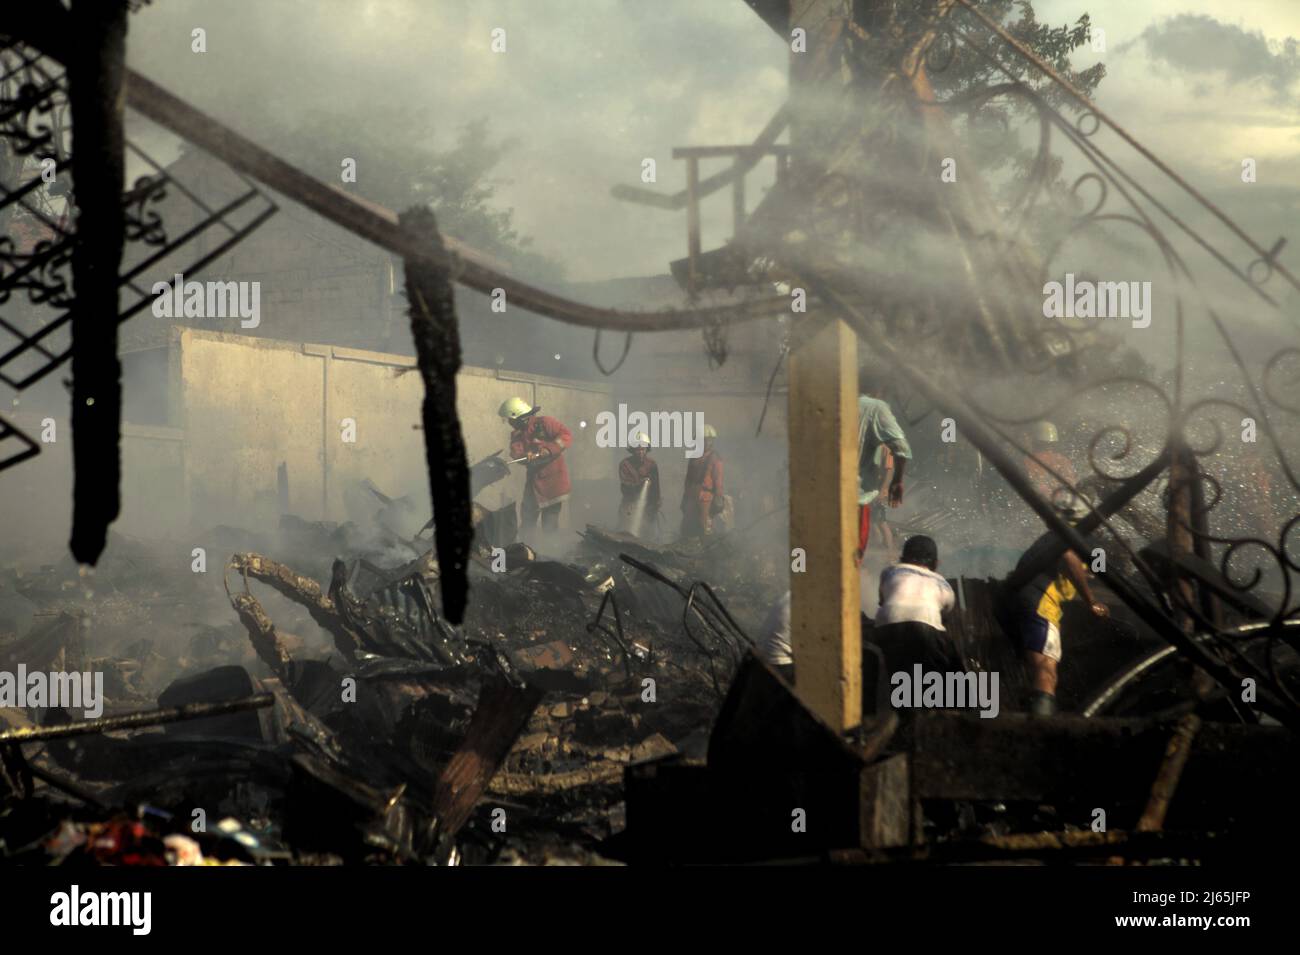 Mitglieder der Löschgruppe von Jakarta, die nach einem Feuerunfall zwischen Trümmern arbeitete, verbrannten Lagergebäude einer Heimindustrie in Kebayoran Lama, South Jakarta, Jakarta, Indonesien. Stockfoto